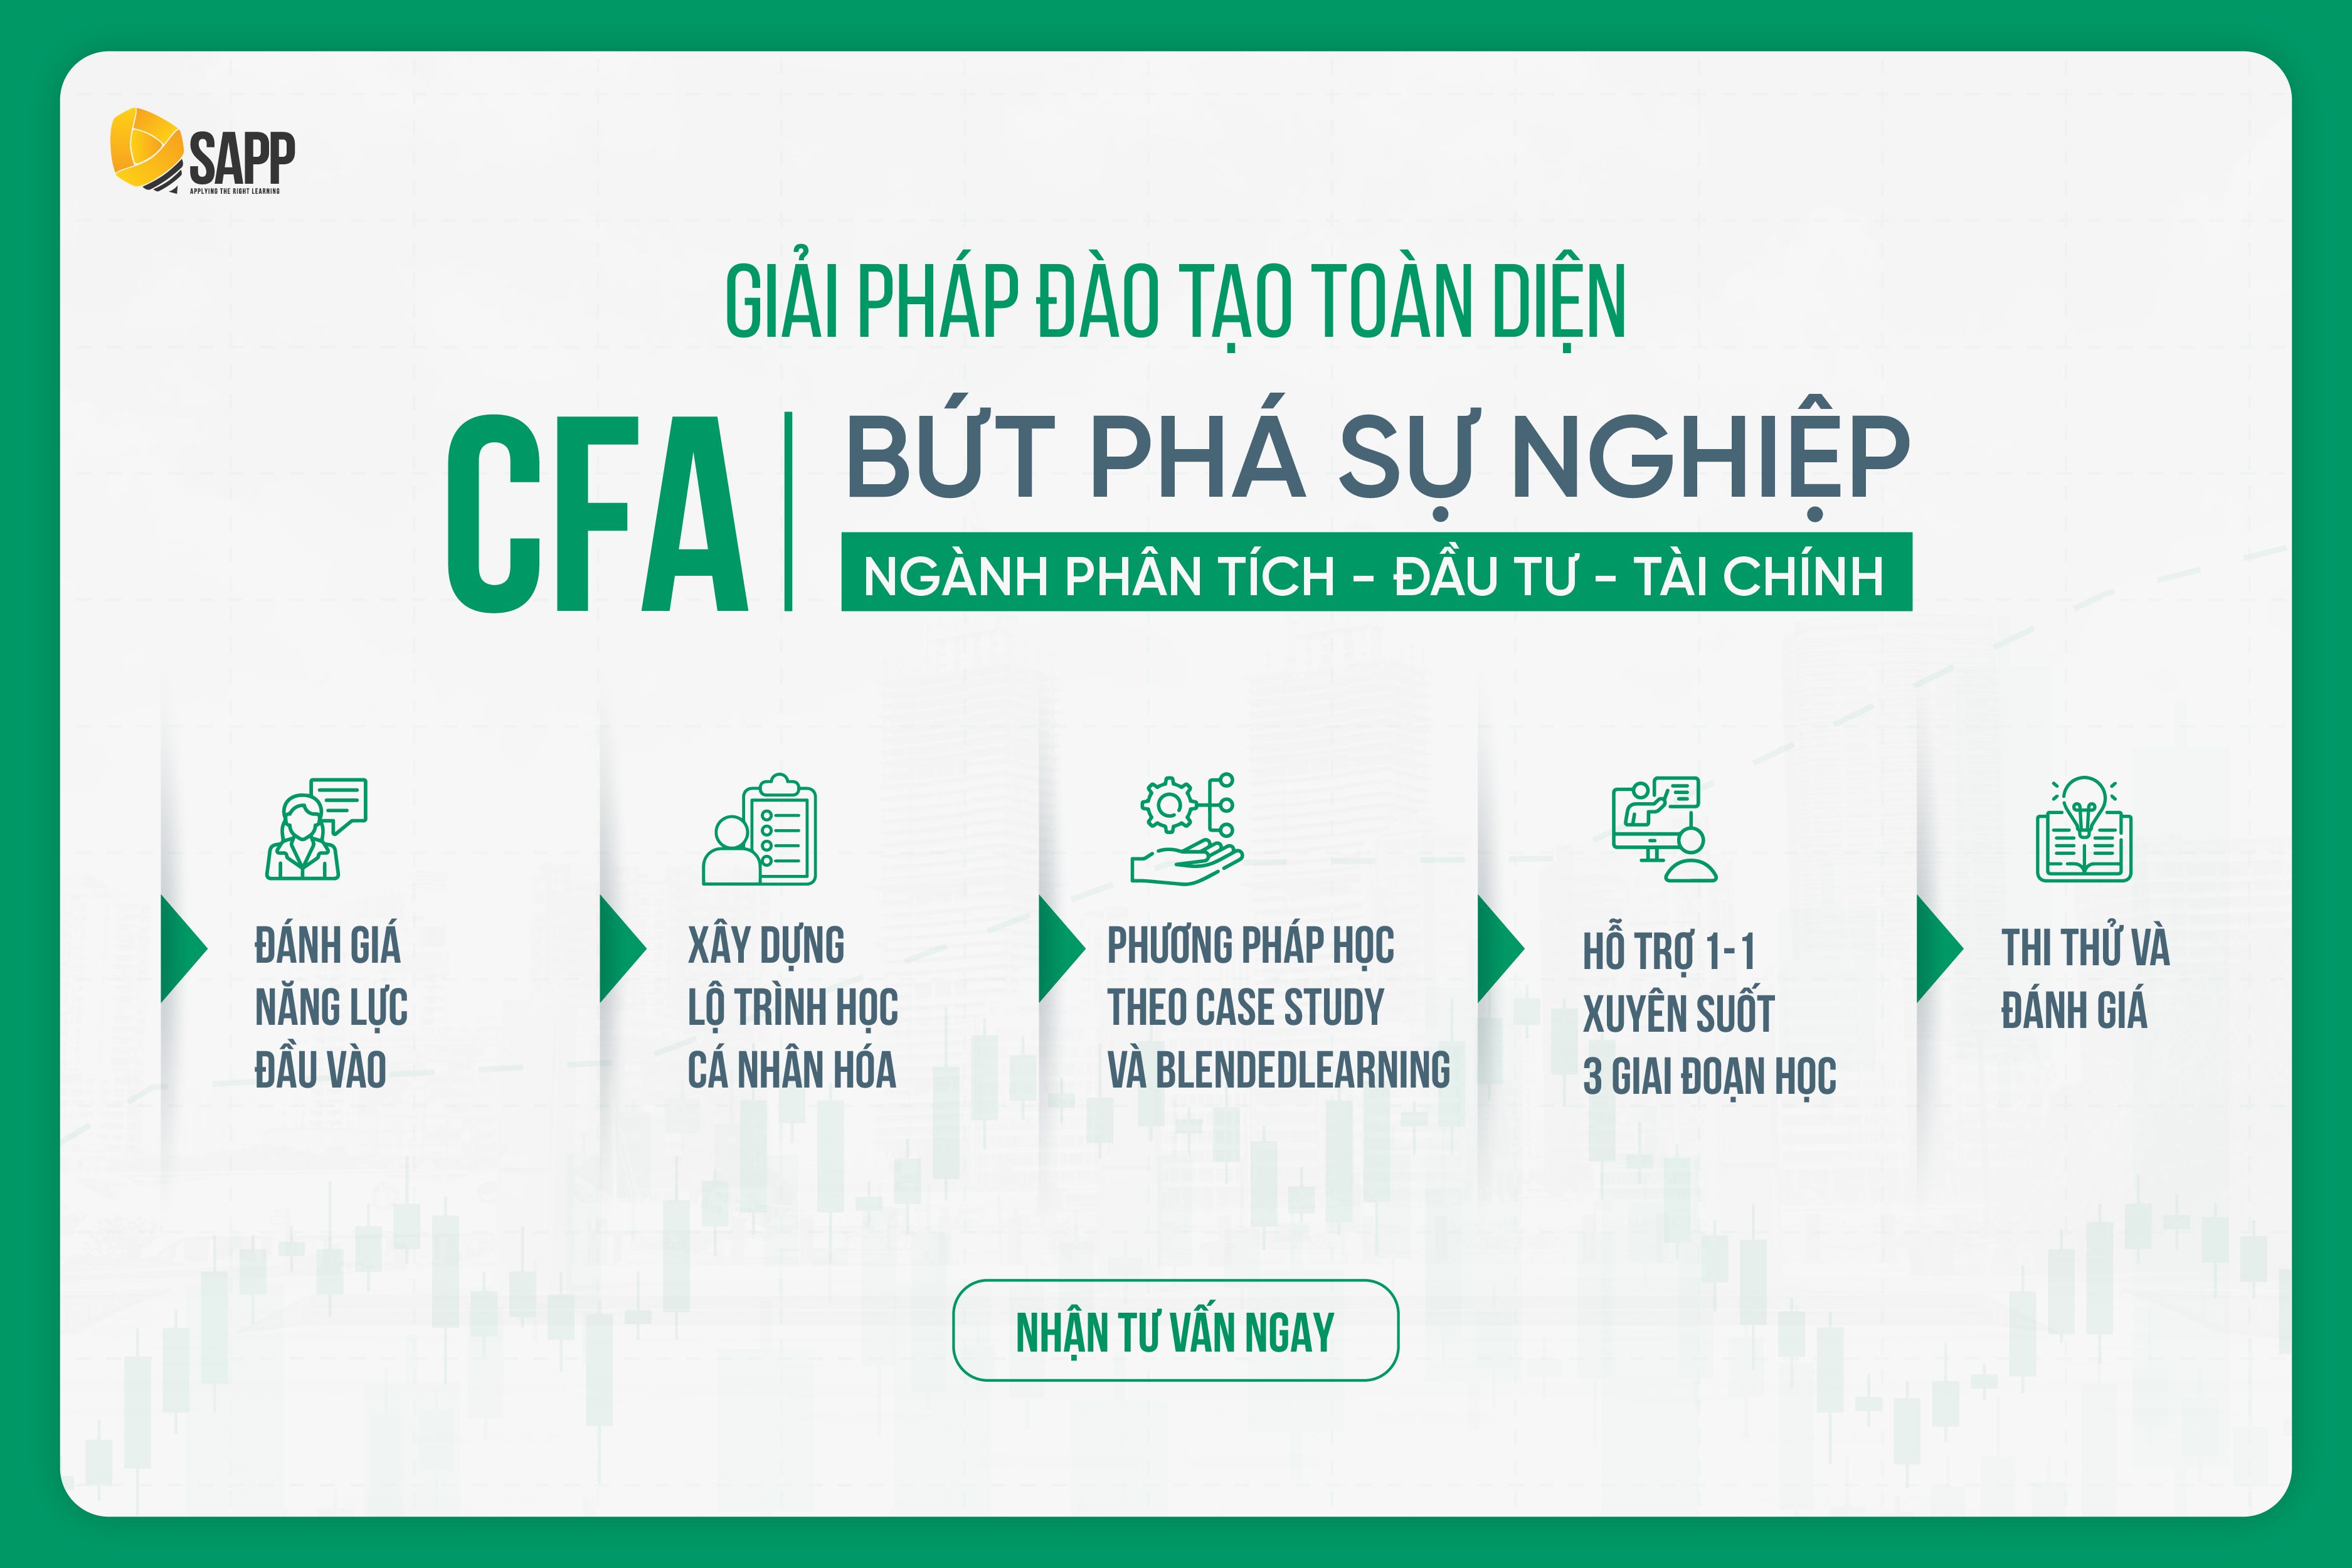 Tìm hiểu khoá học CFA tại SAPP Academy